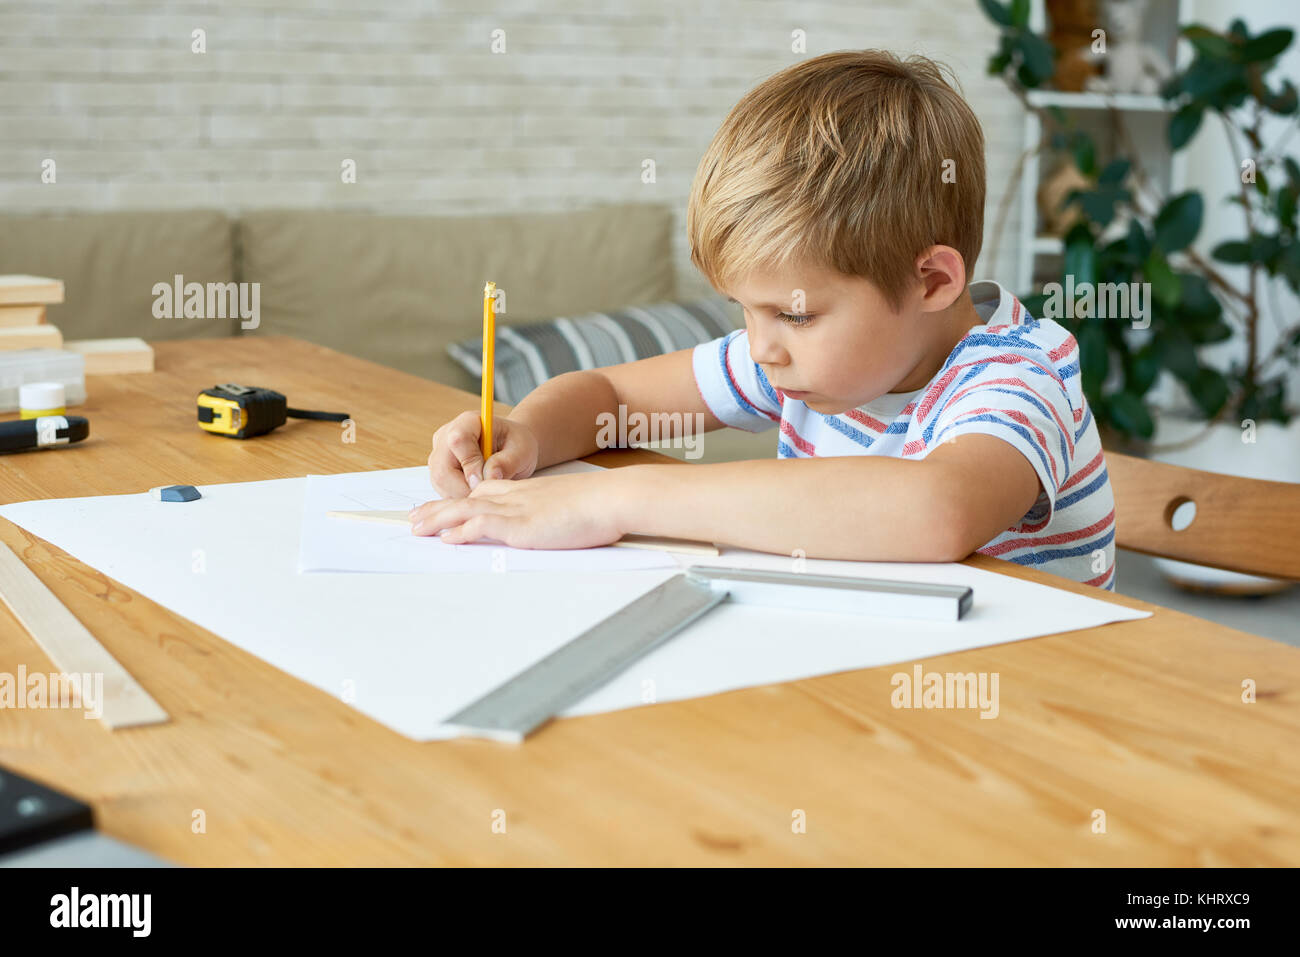 Portrait of cute little boy écrire ou dessiner soigneusement assis à un bureau et à faire leurs devoirs, copy space Banque D'Images